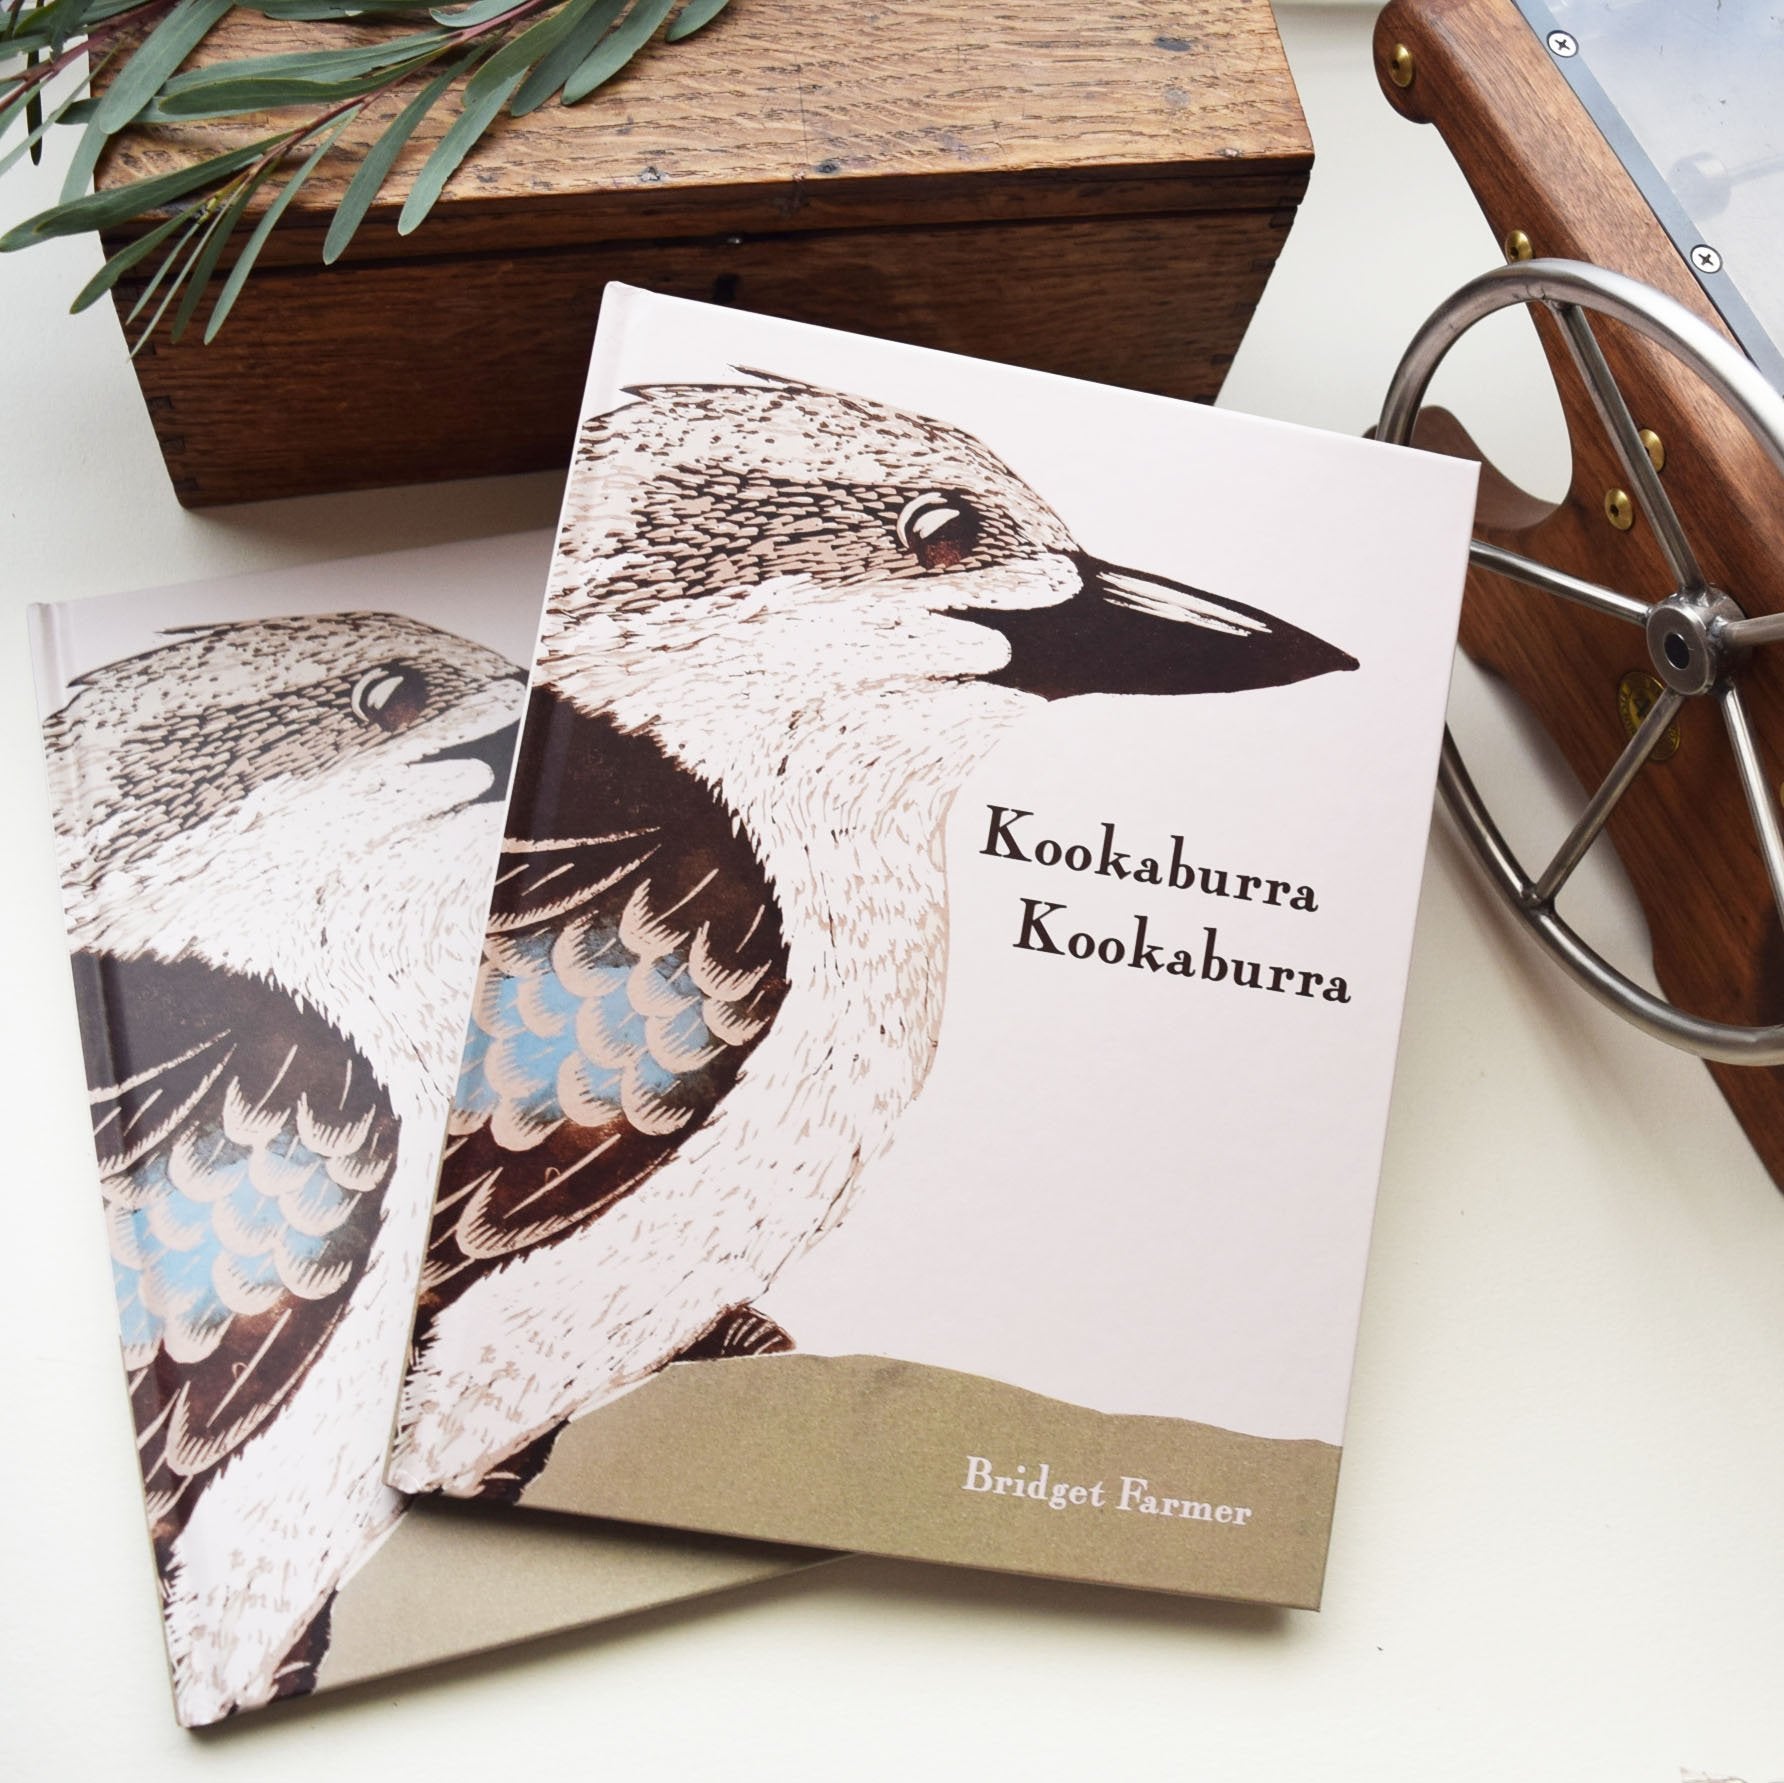 Book - Kookaburra Kookaburra